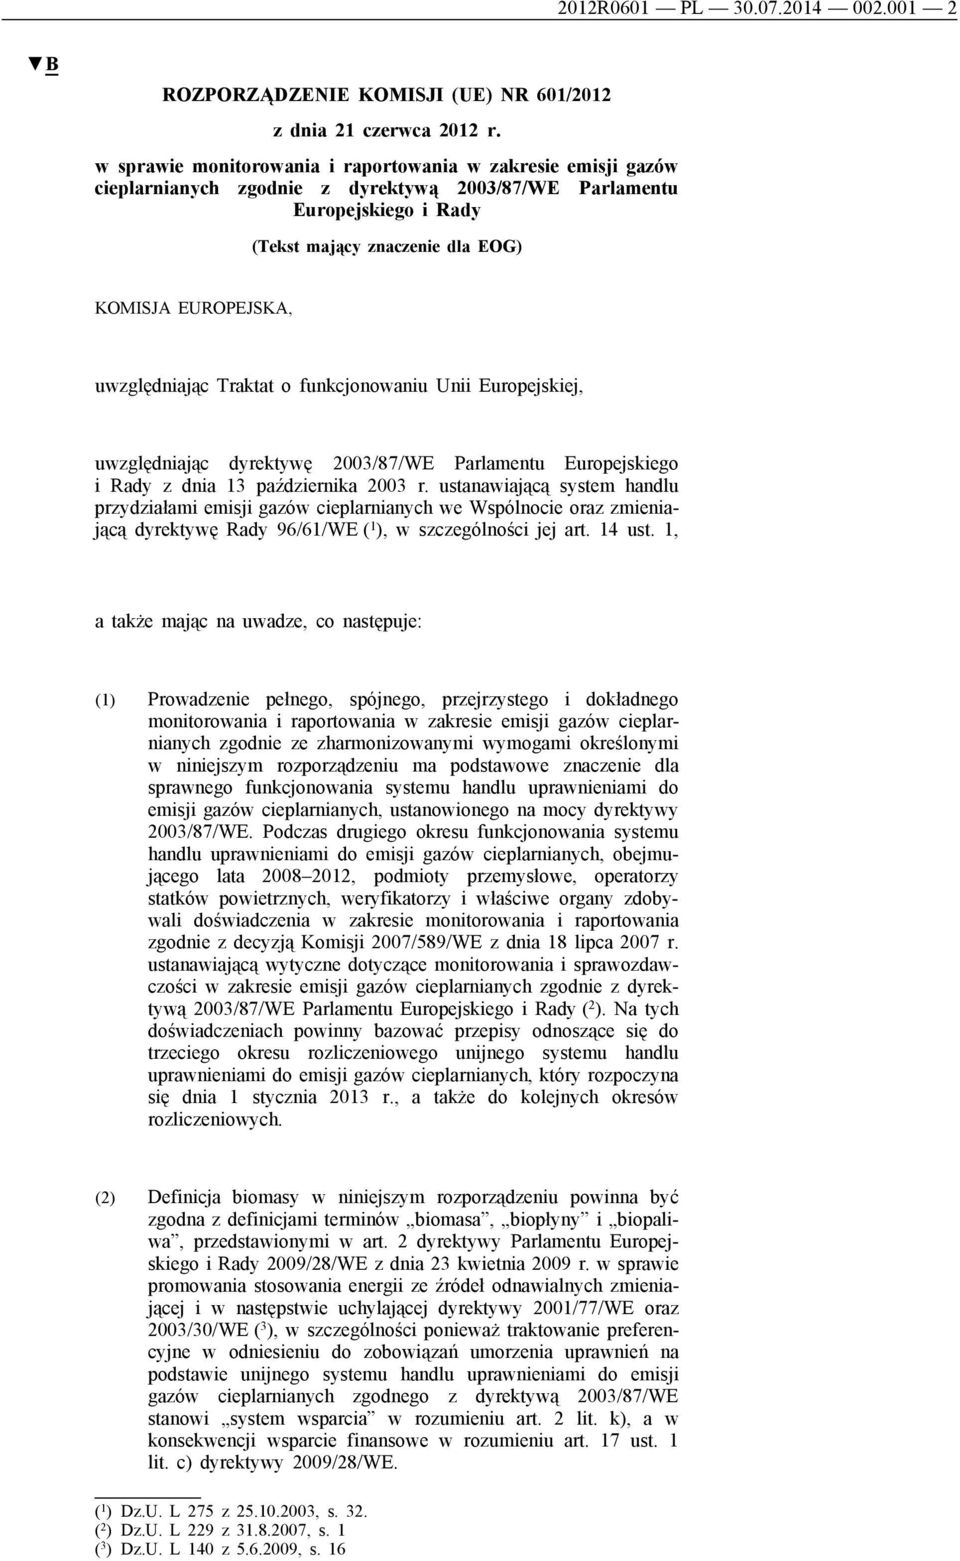 uwzględniając Traktat o funkcjonowaniu Unii Europejskiej, uwzględniając dyrektywę 2003/87/WE Parlamentu Europejskiego i Rady z dnia 13 października 2003 r.